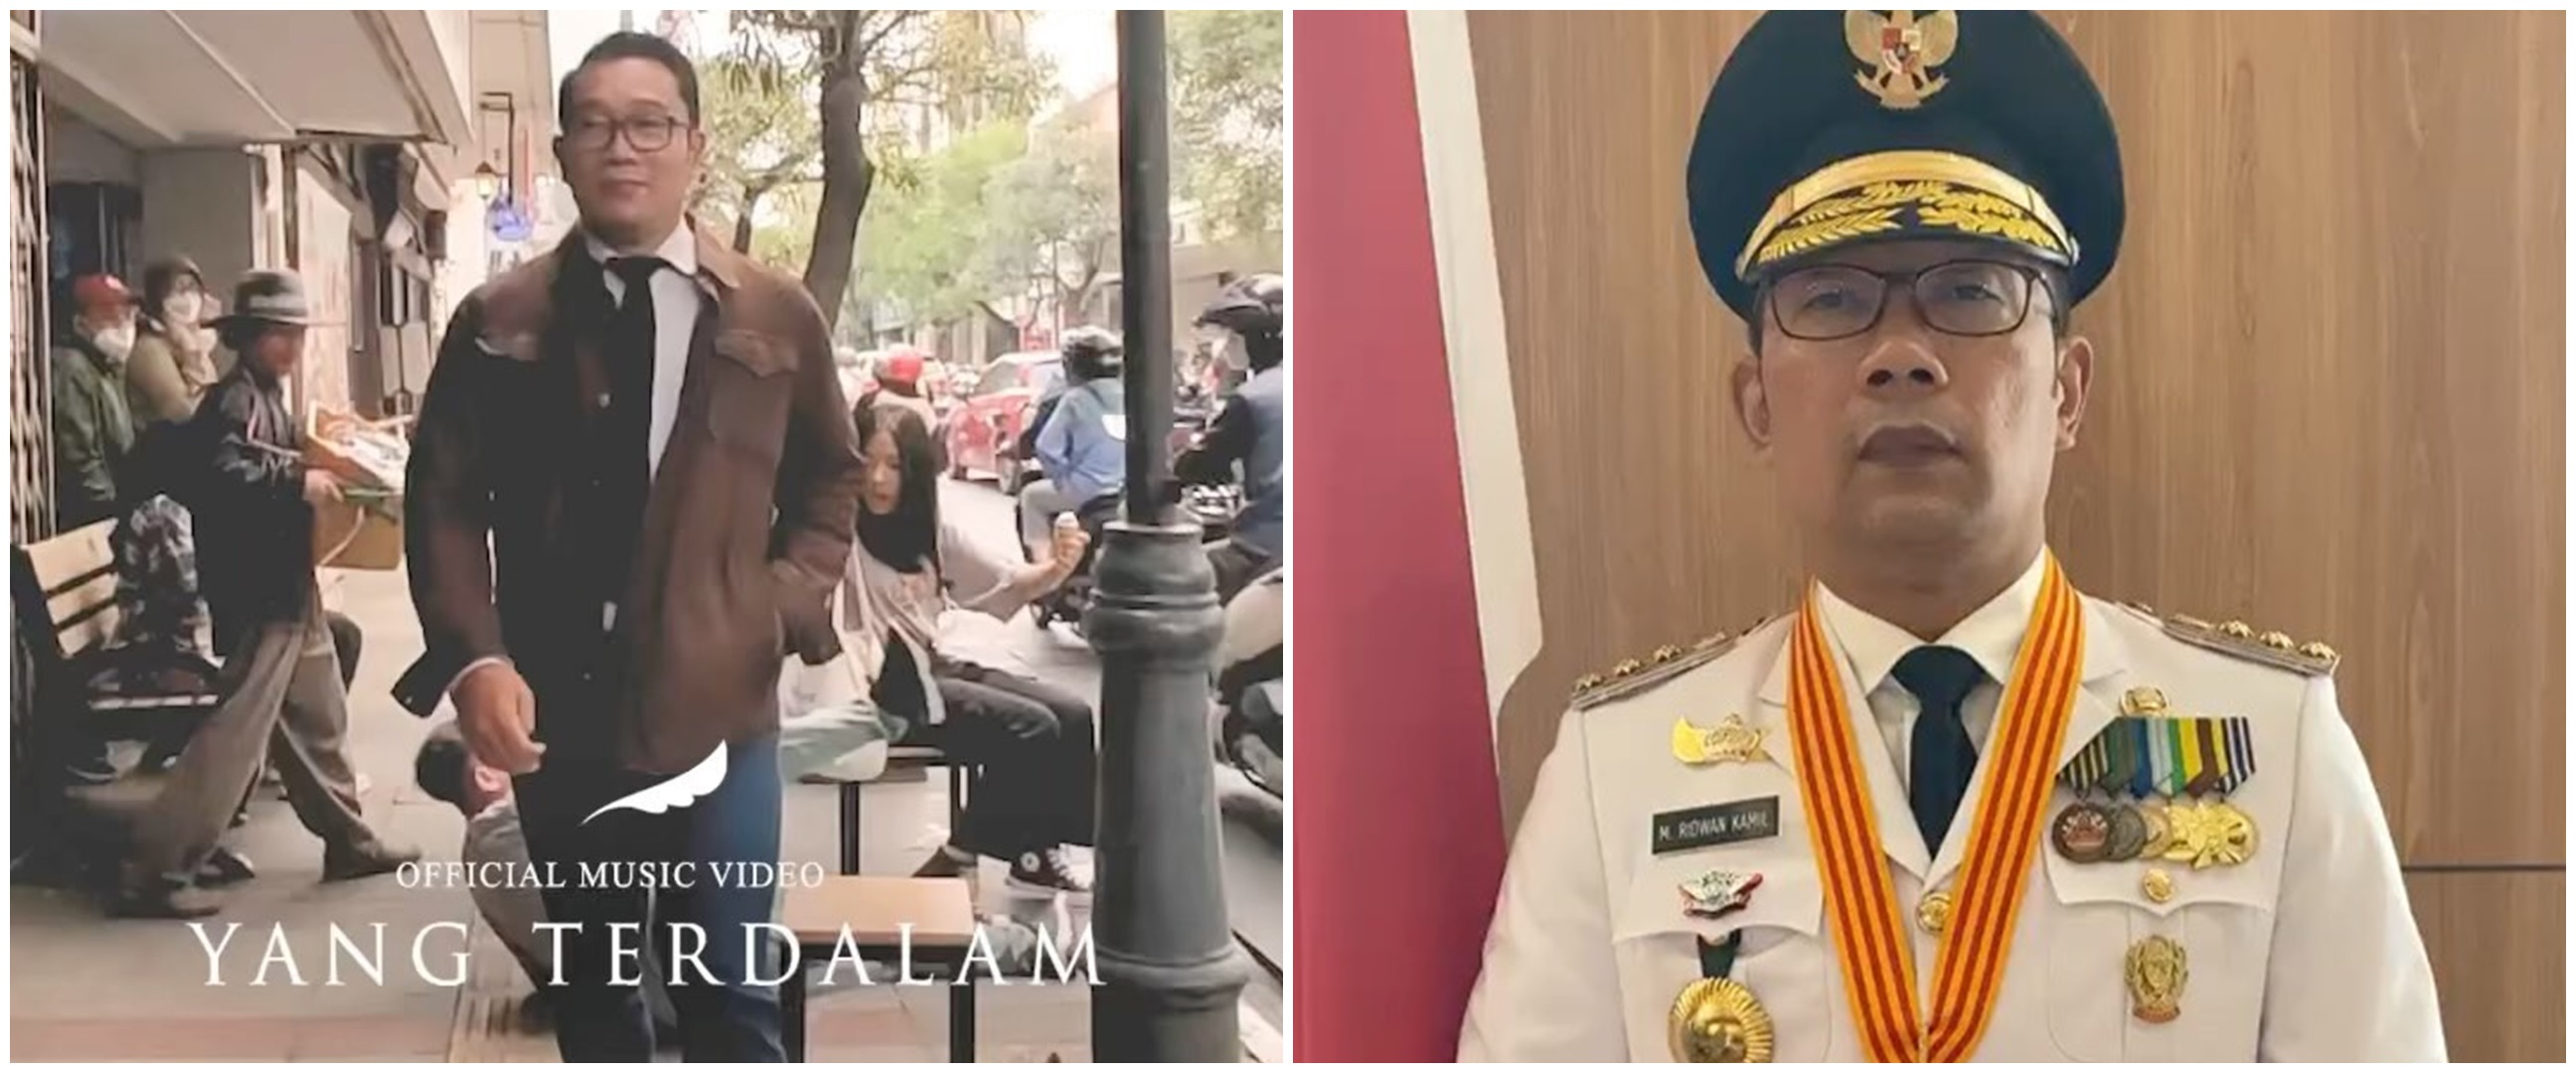 Parodikan klip Noah 'Yang Terdalam', gaya Ridwan Kamil bikin ngakak